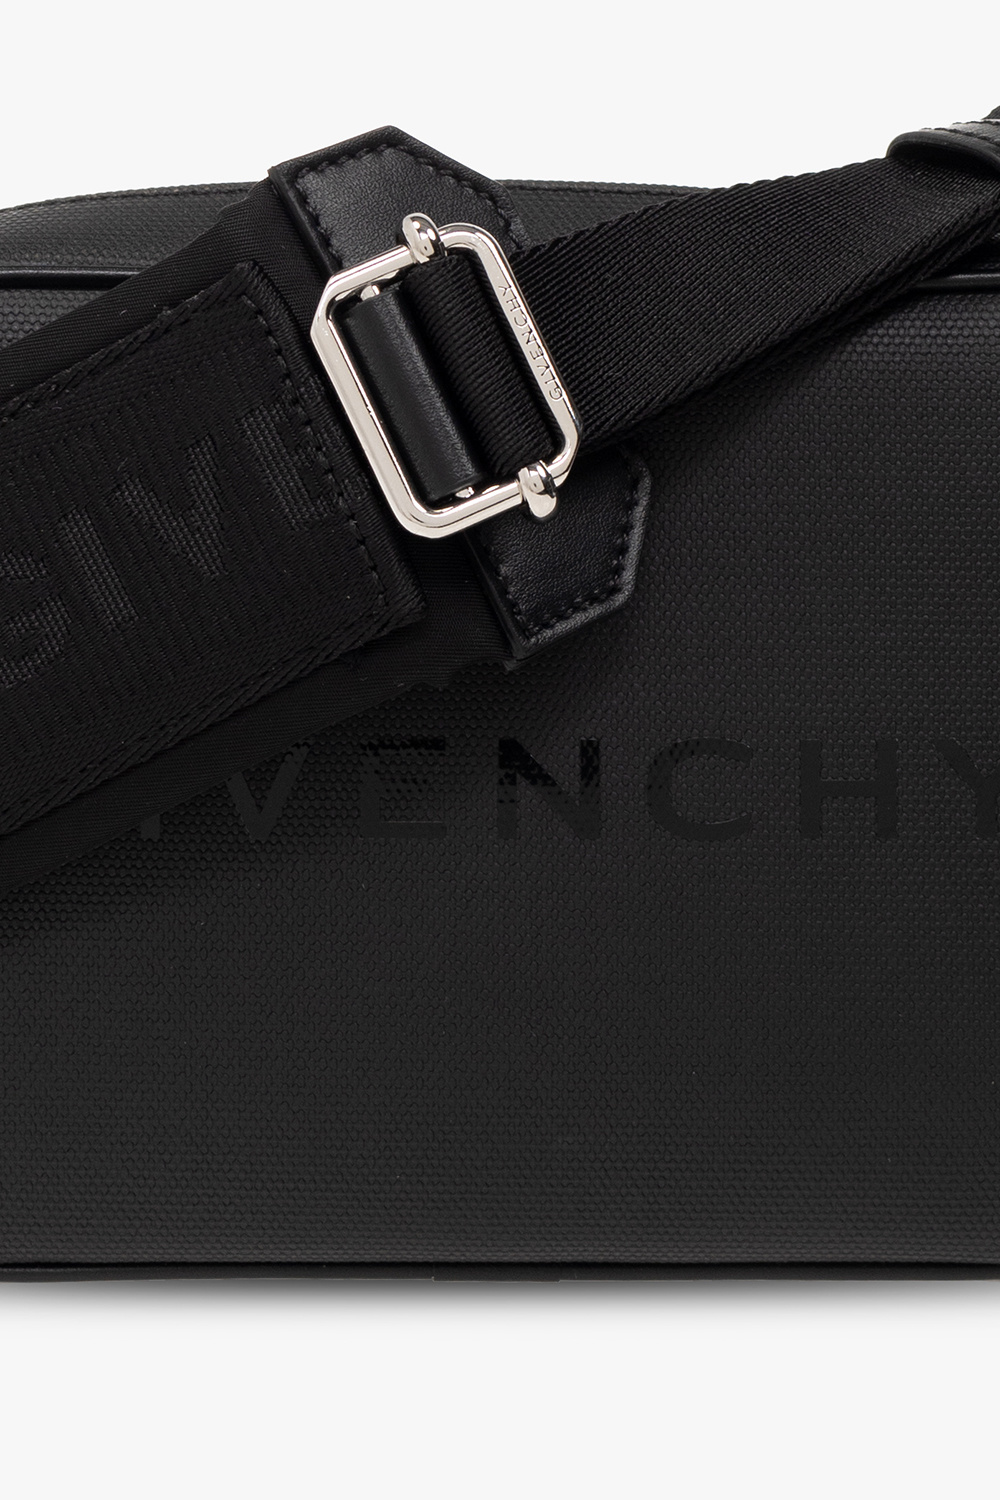 Givenchy Givenchy MEN COATS CASUAL